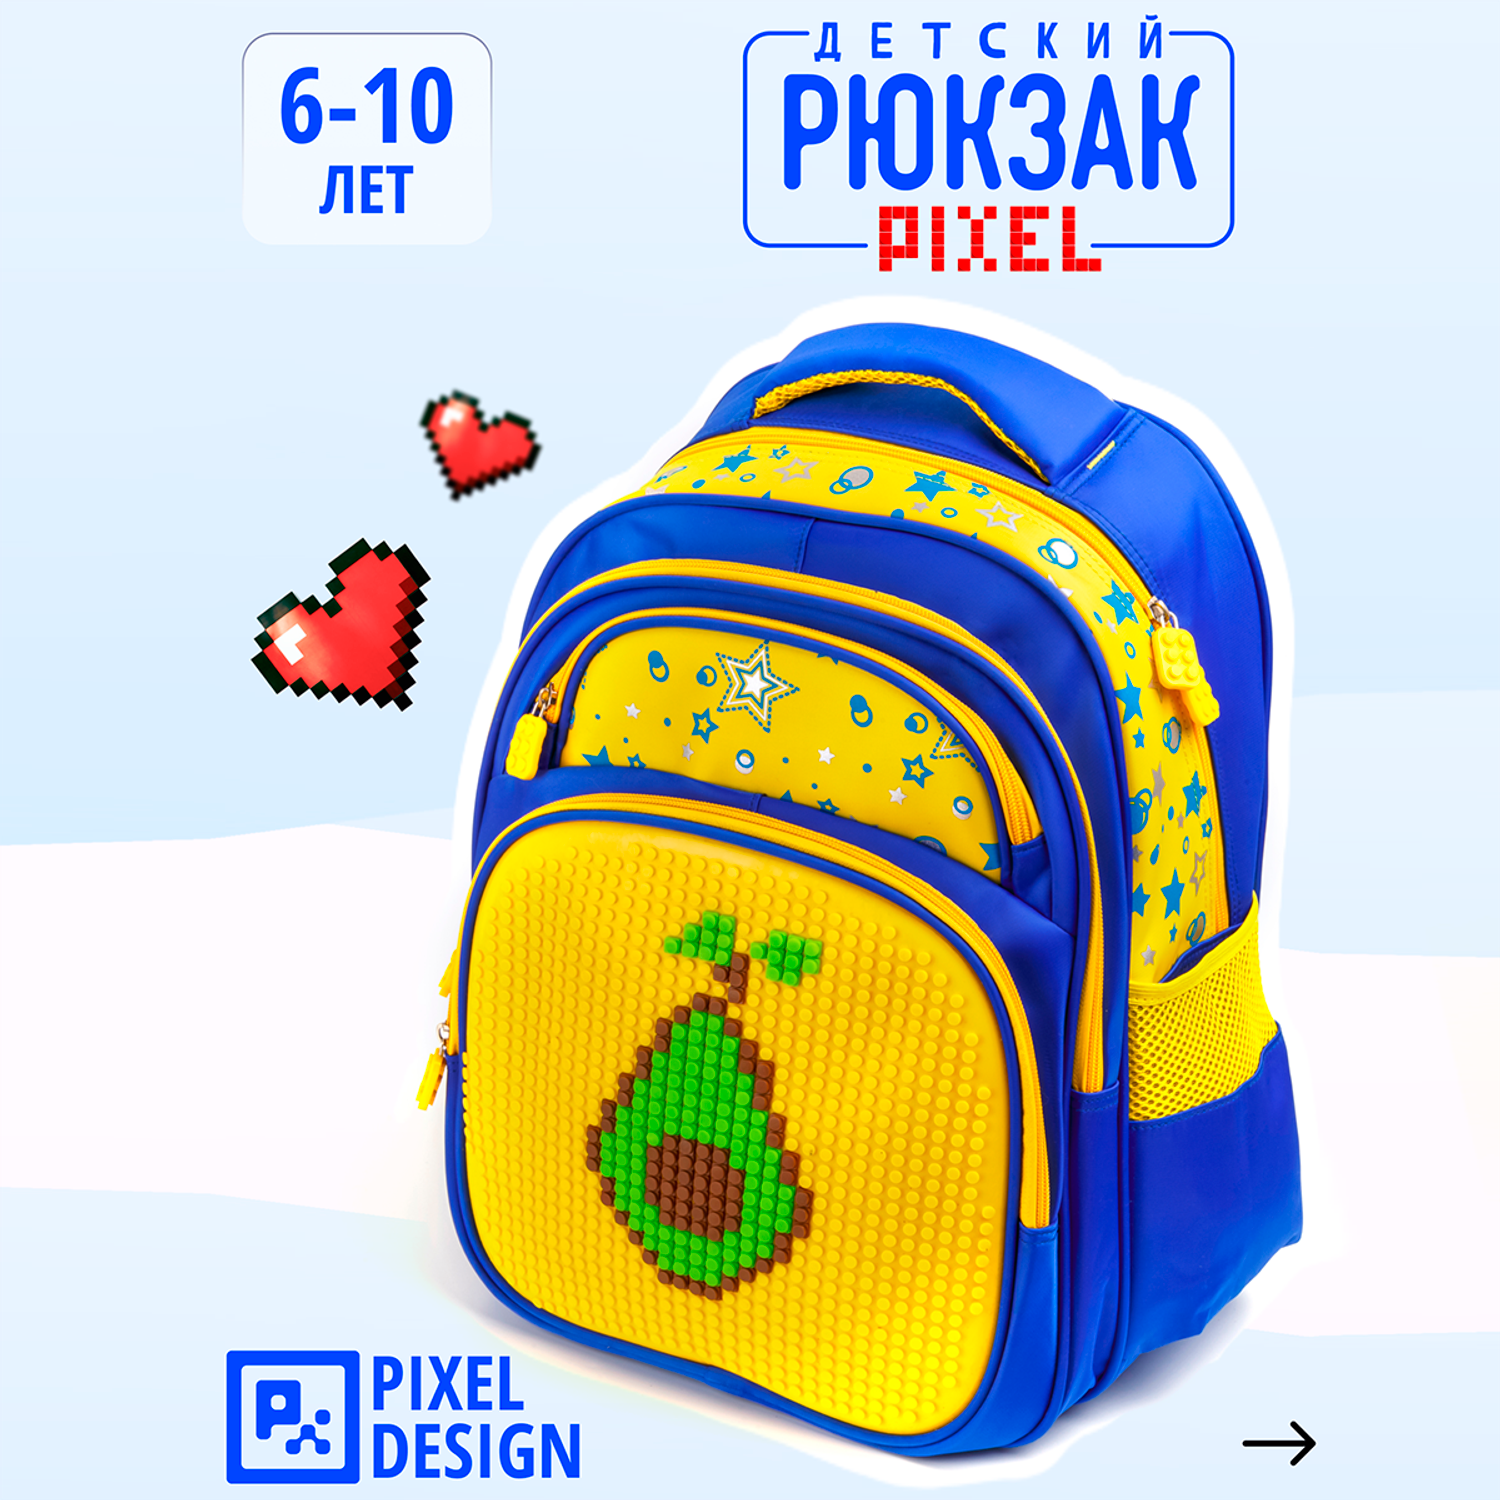 Рюкзак пиксельный BAZUMI школьный - фото 2